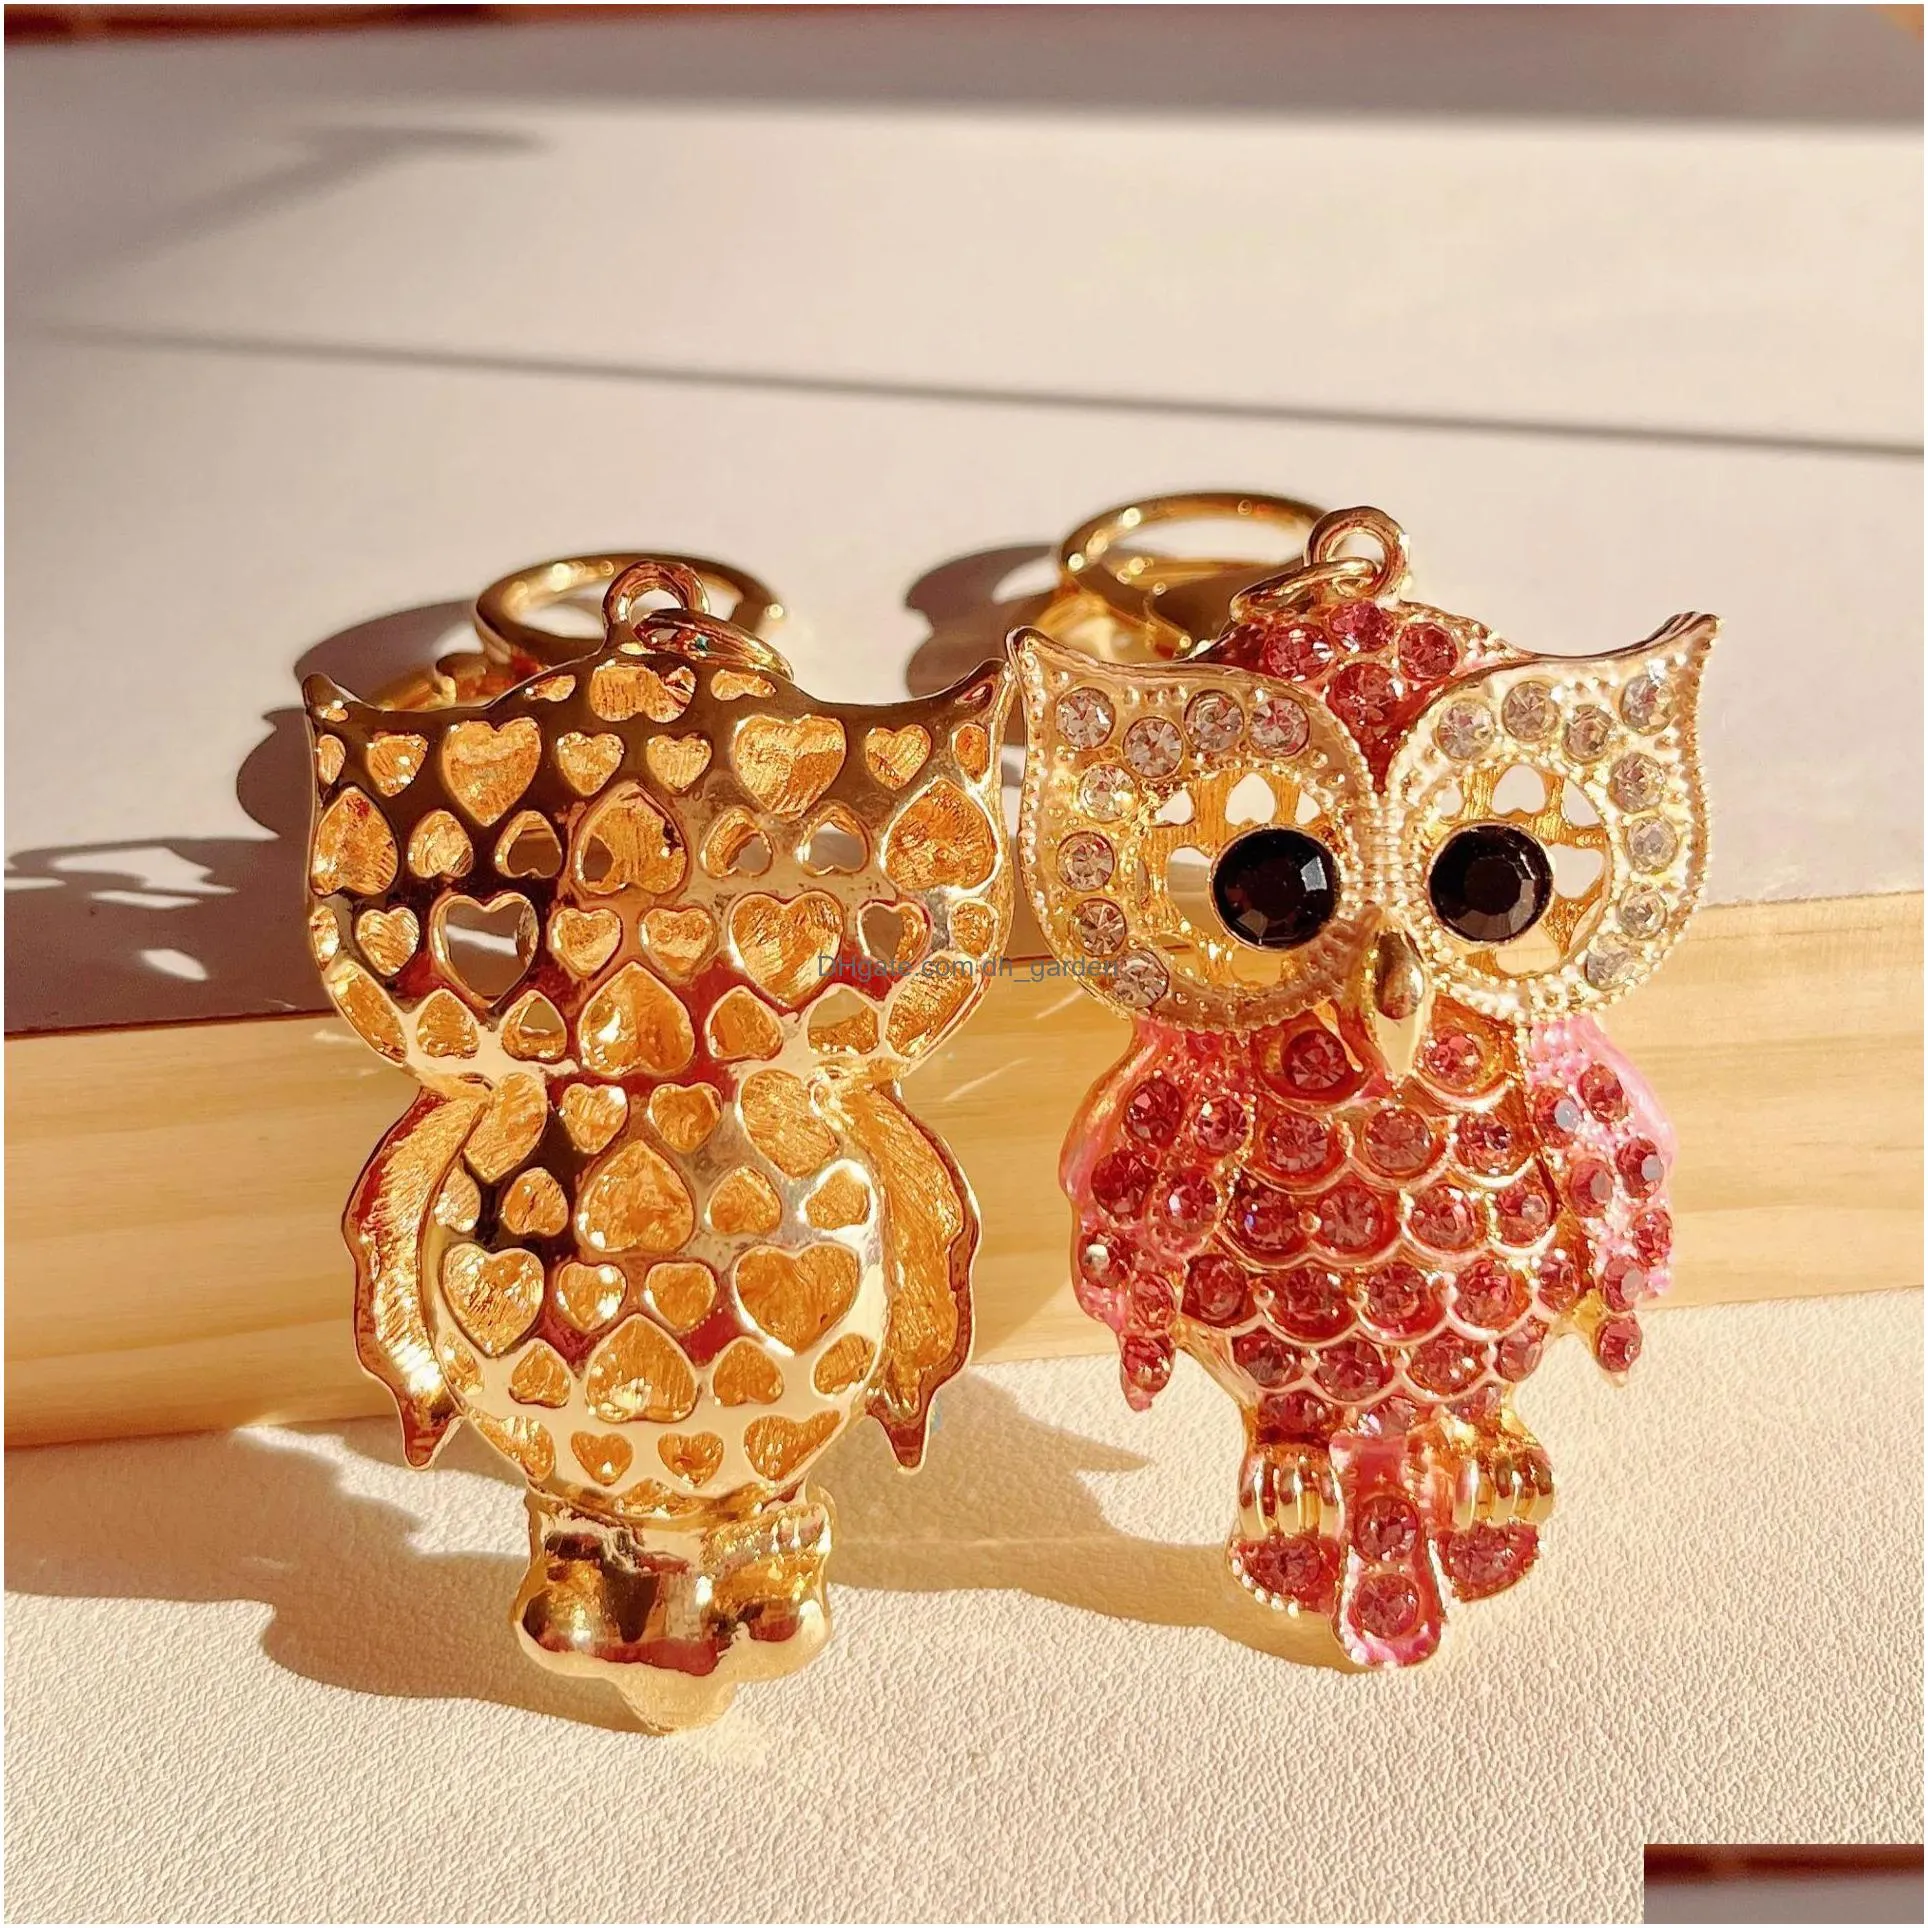 Key Rings Cute Owl Keyrings Luxury Crystal Rhinestone Animal Keychains Holder For Women Fashion Gold Cartoon Car Chains Bag Dhgarden Dhbhz